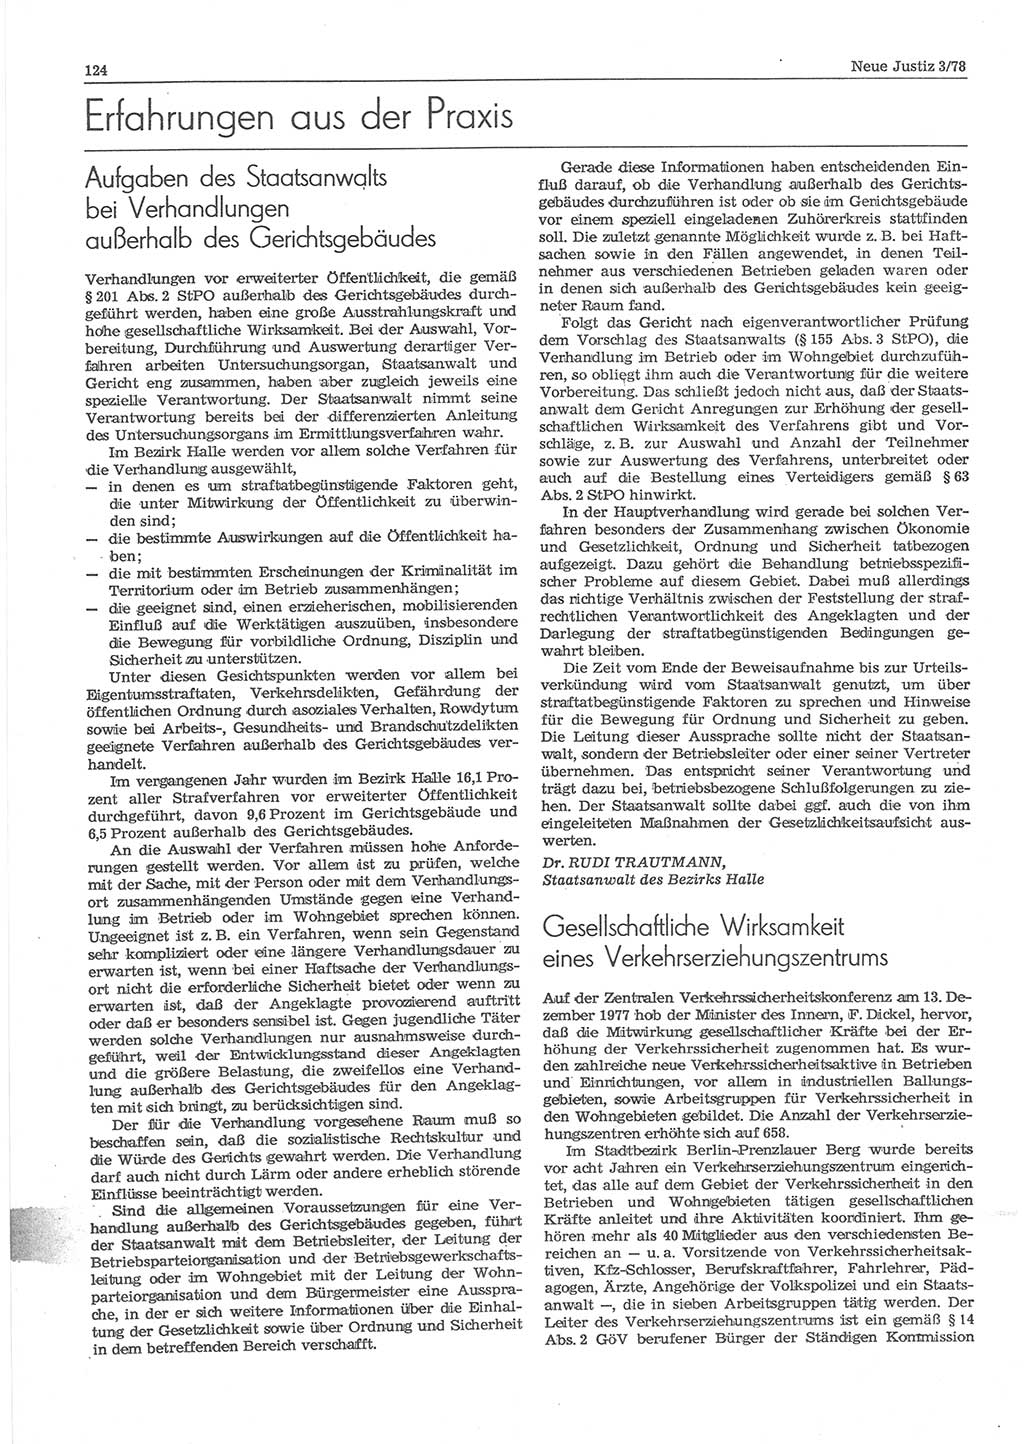 Neue Justiz (NJ), Zeitschrift für sozialistisches Recht und Gesetzlichkeit [Deutsche Demokratische Republik (DDR)], 32. Jahrgang 1978, Seite 124 (NJ DDR 1978, S. 124)